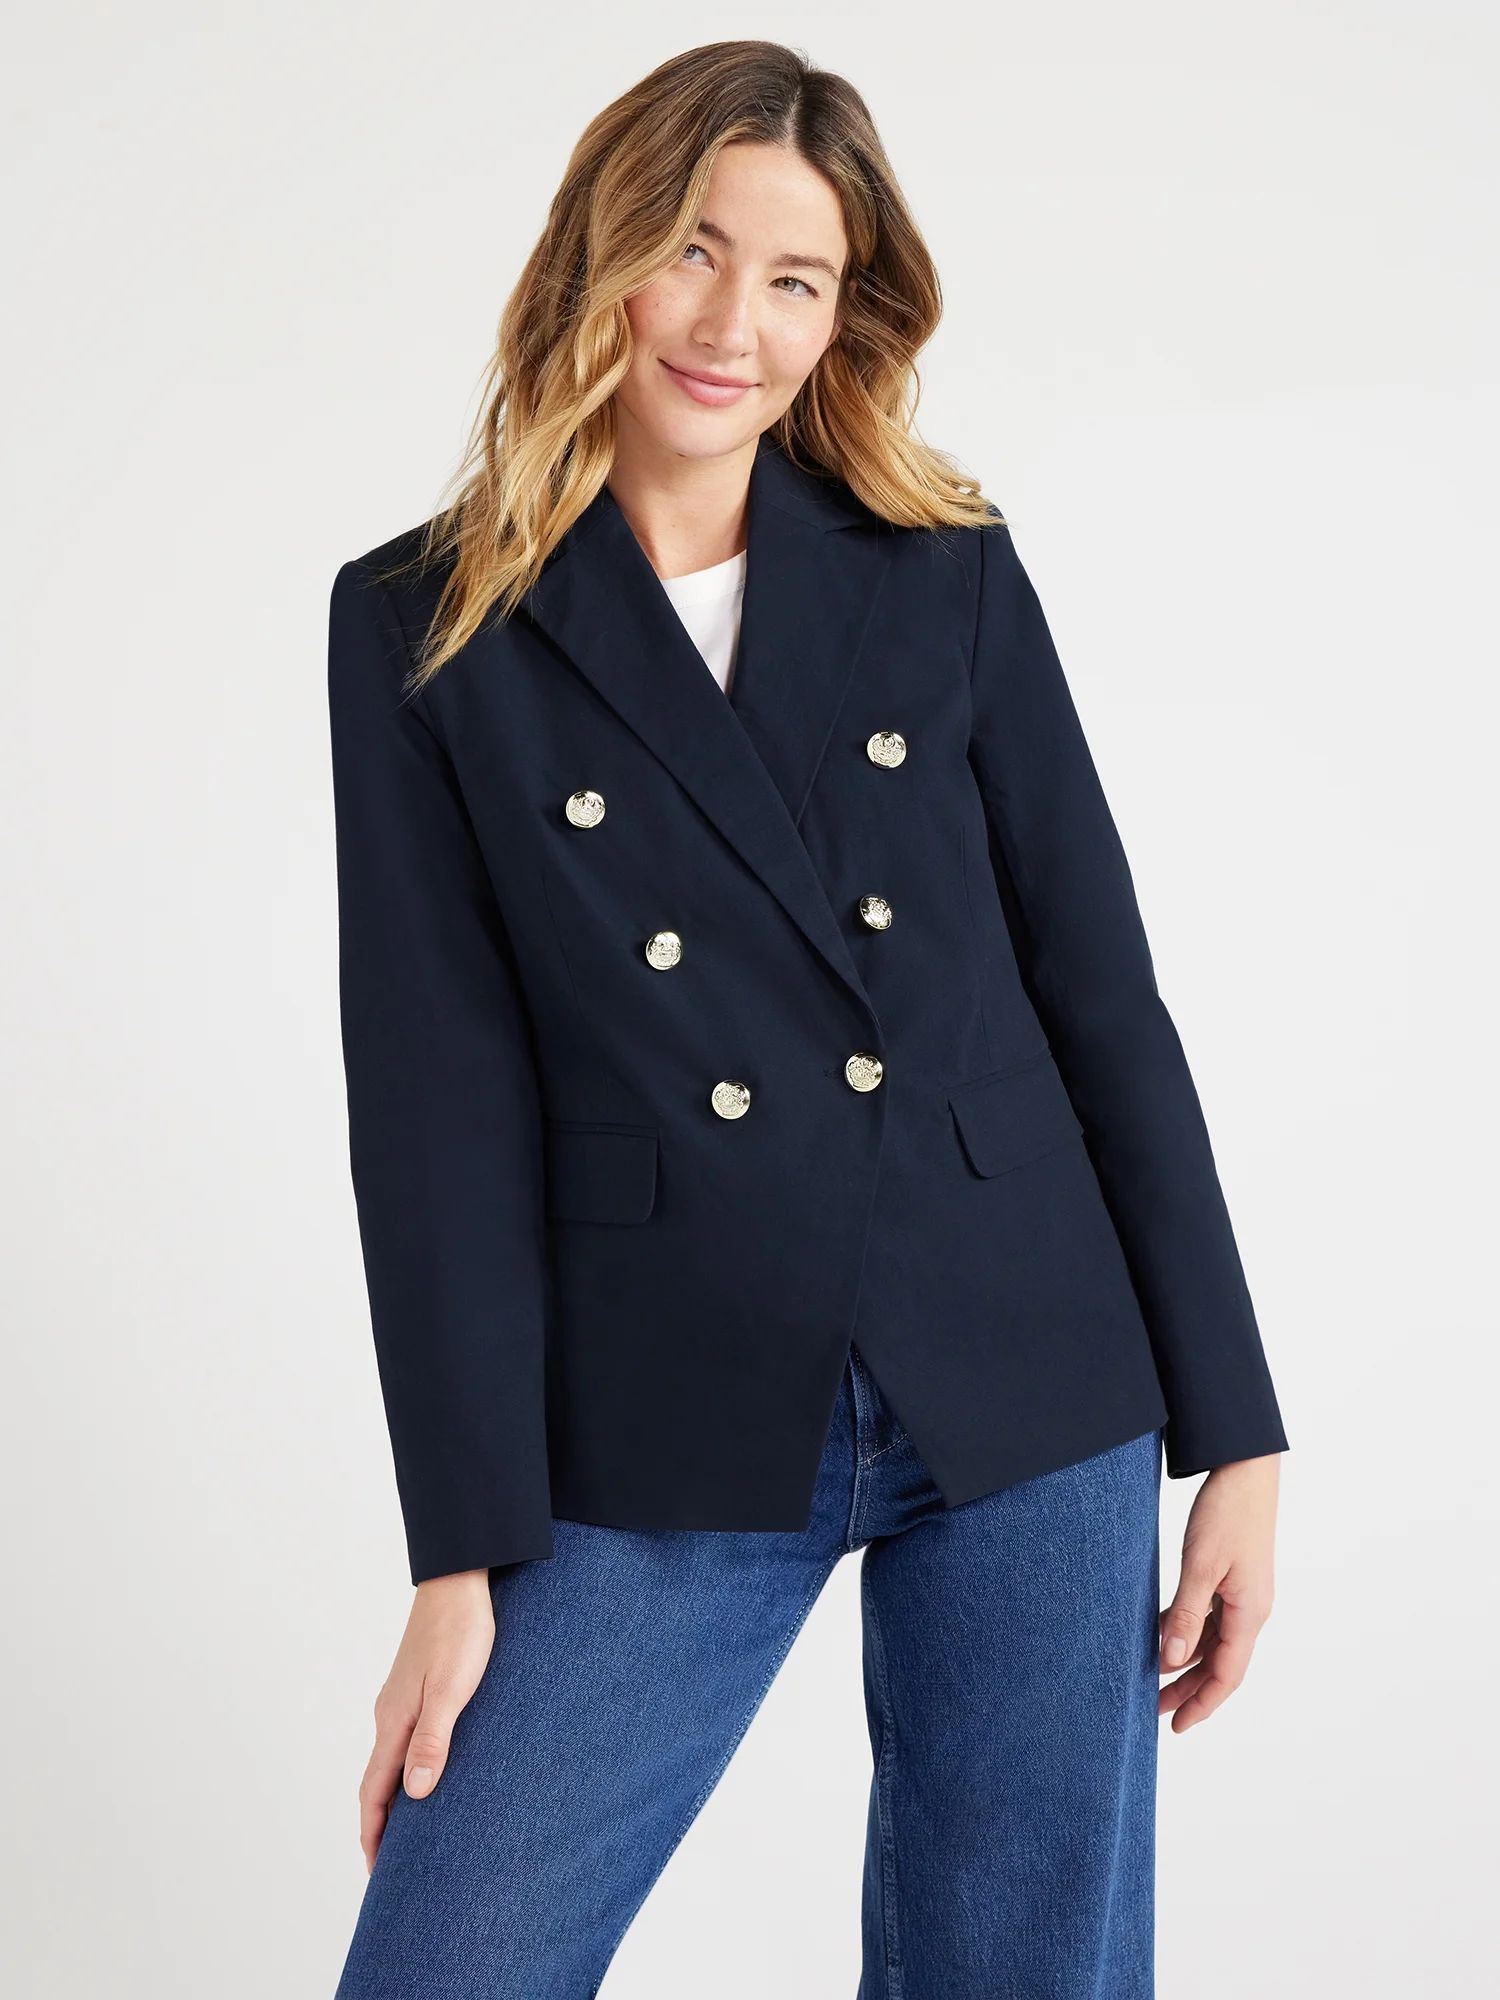 Free Assembly Women’s Overlay Tailored Blazer, Sizes XS-XXXL | Walmart (US)